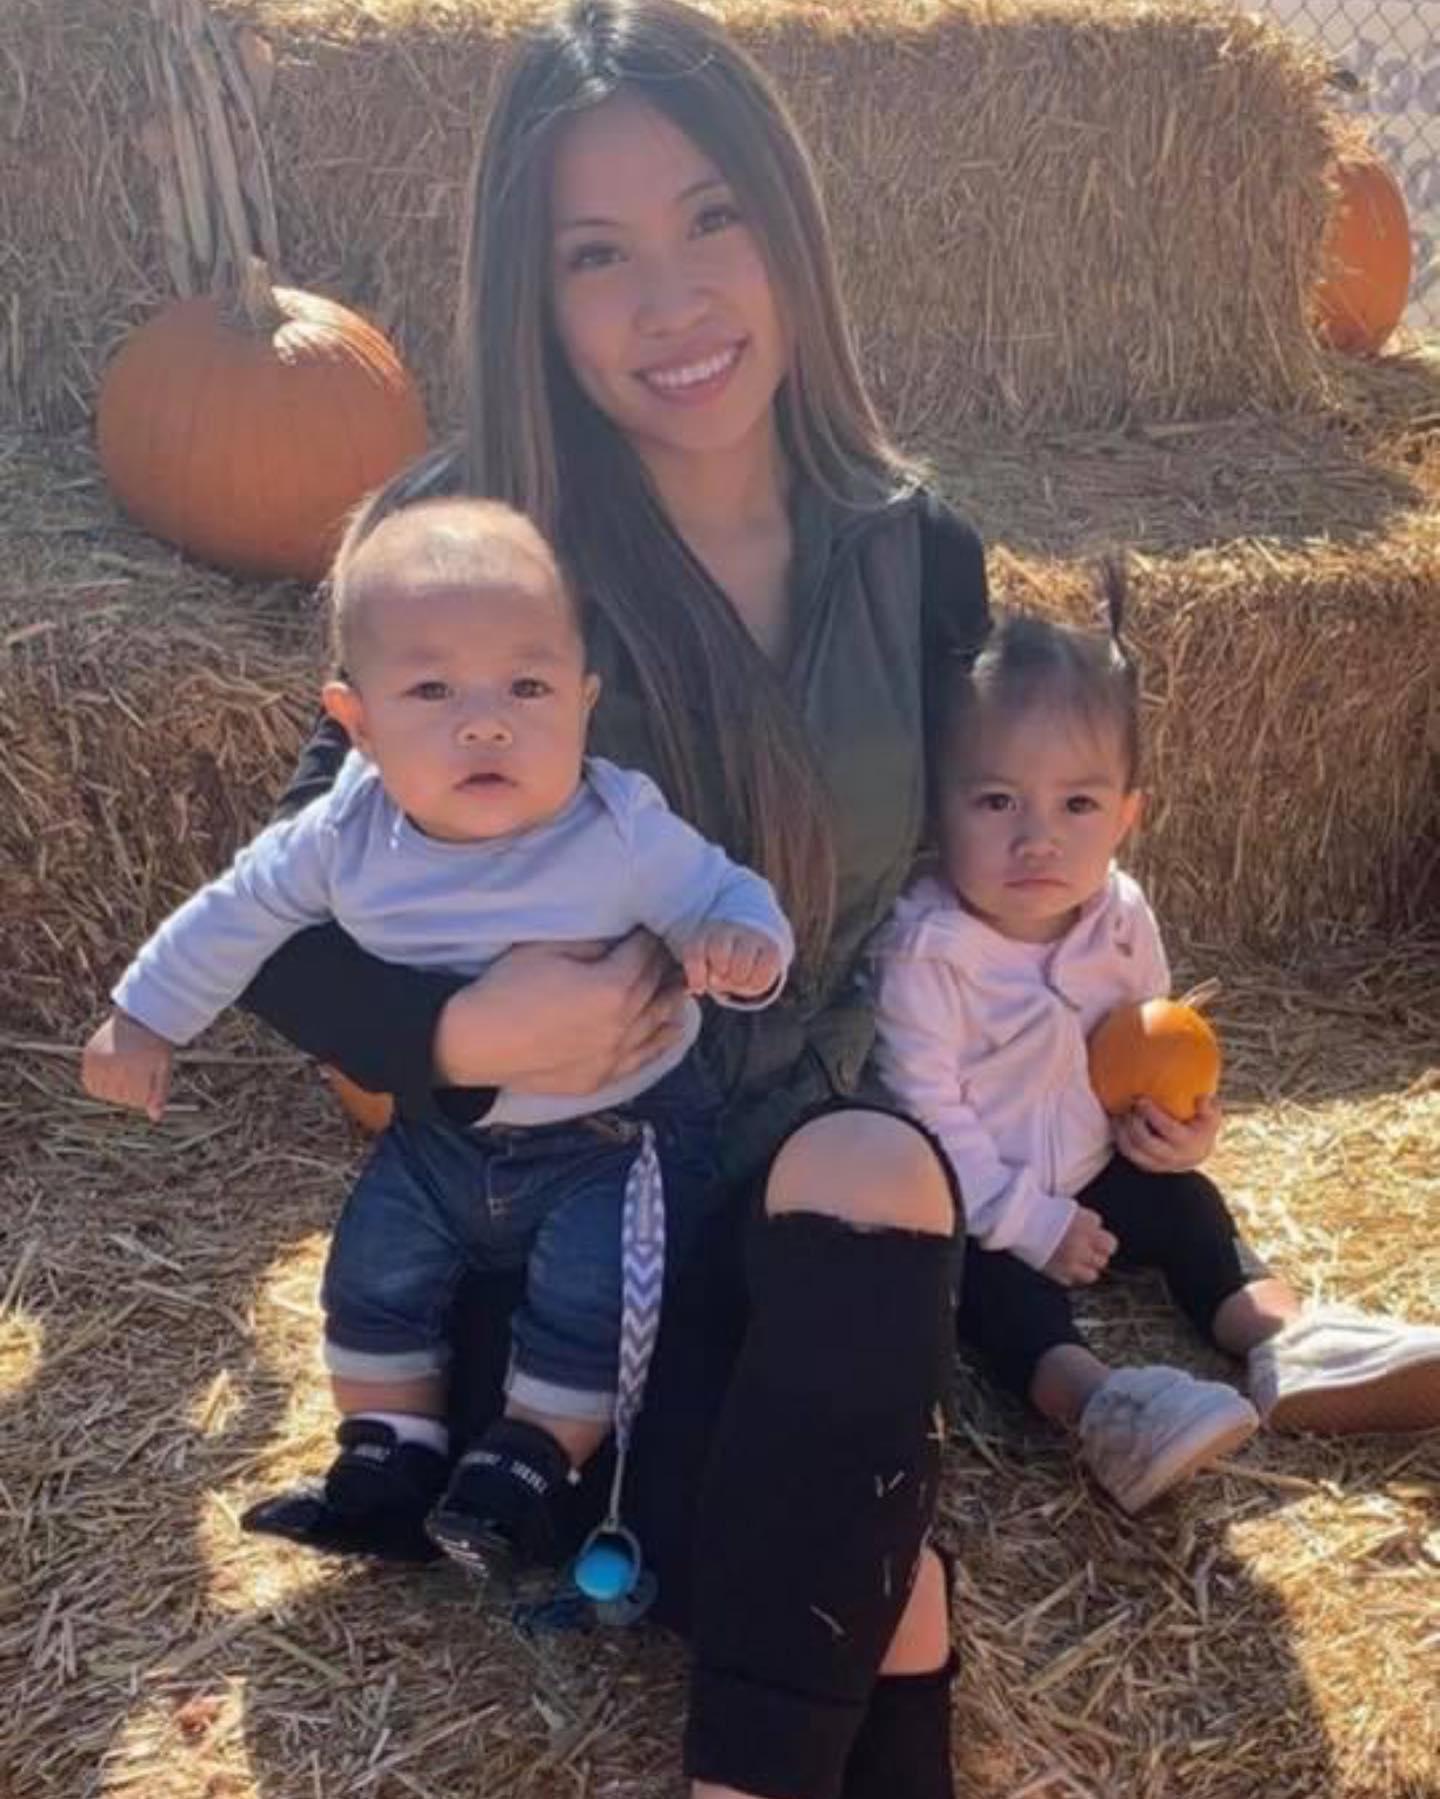 Un bărbat de 27 de ani și a ucis iubita în fața celor doi copii, după o ceartă aprinsă, în California: "Și-a dedicat viața copiilor ei"